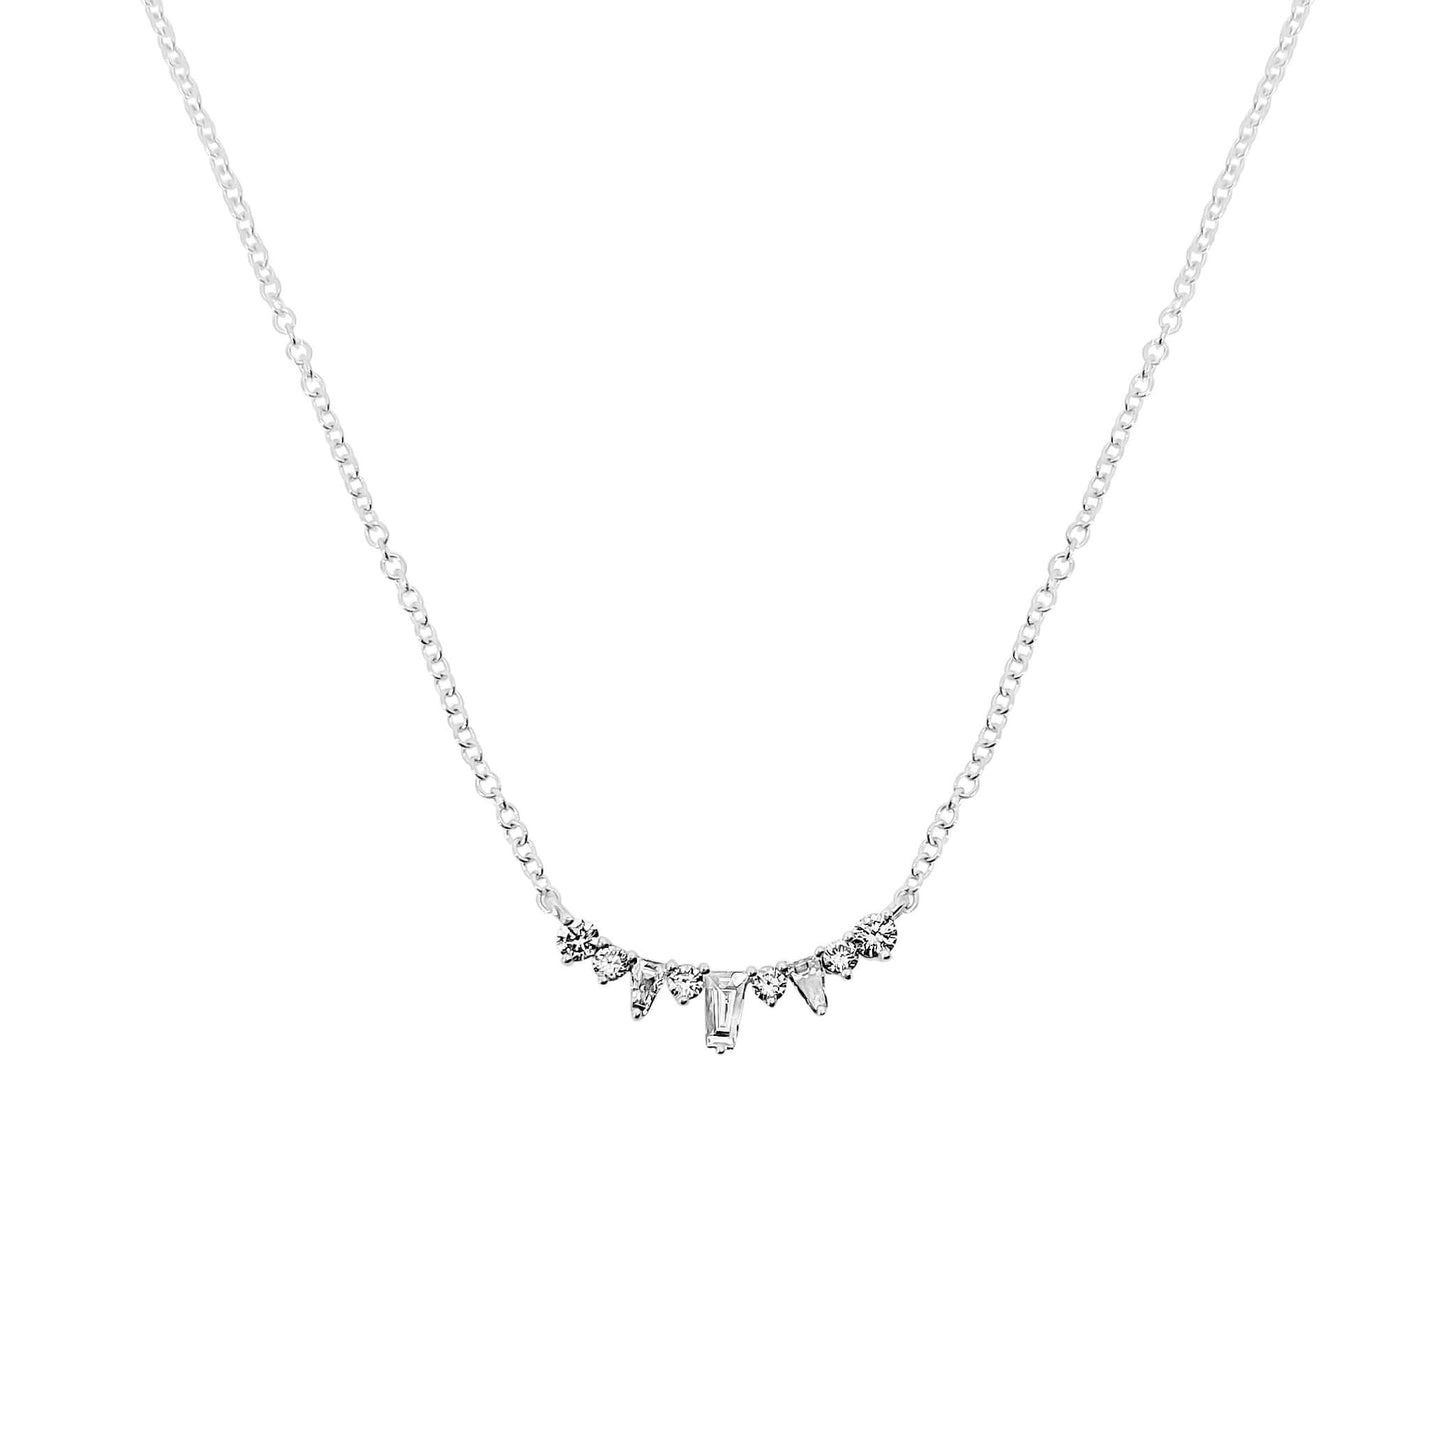 Mini Curved Diamond Necklace